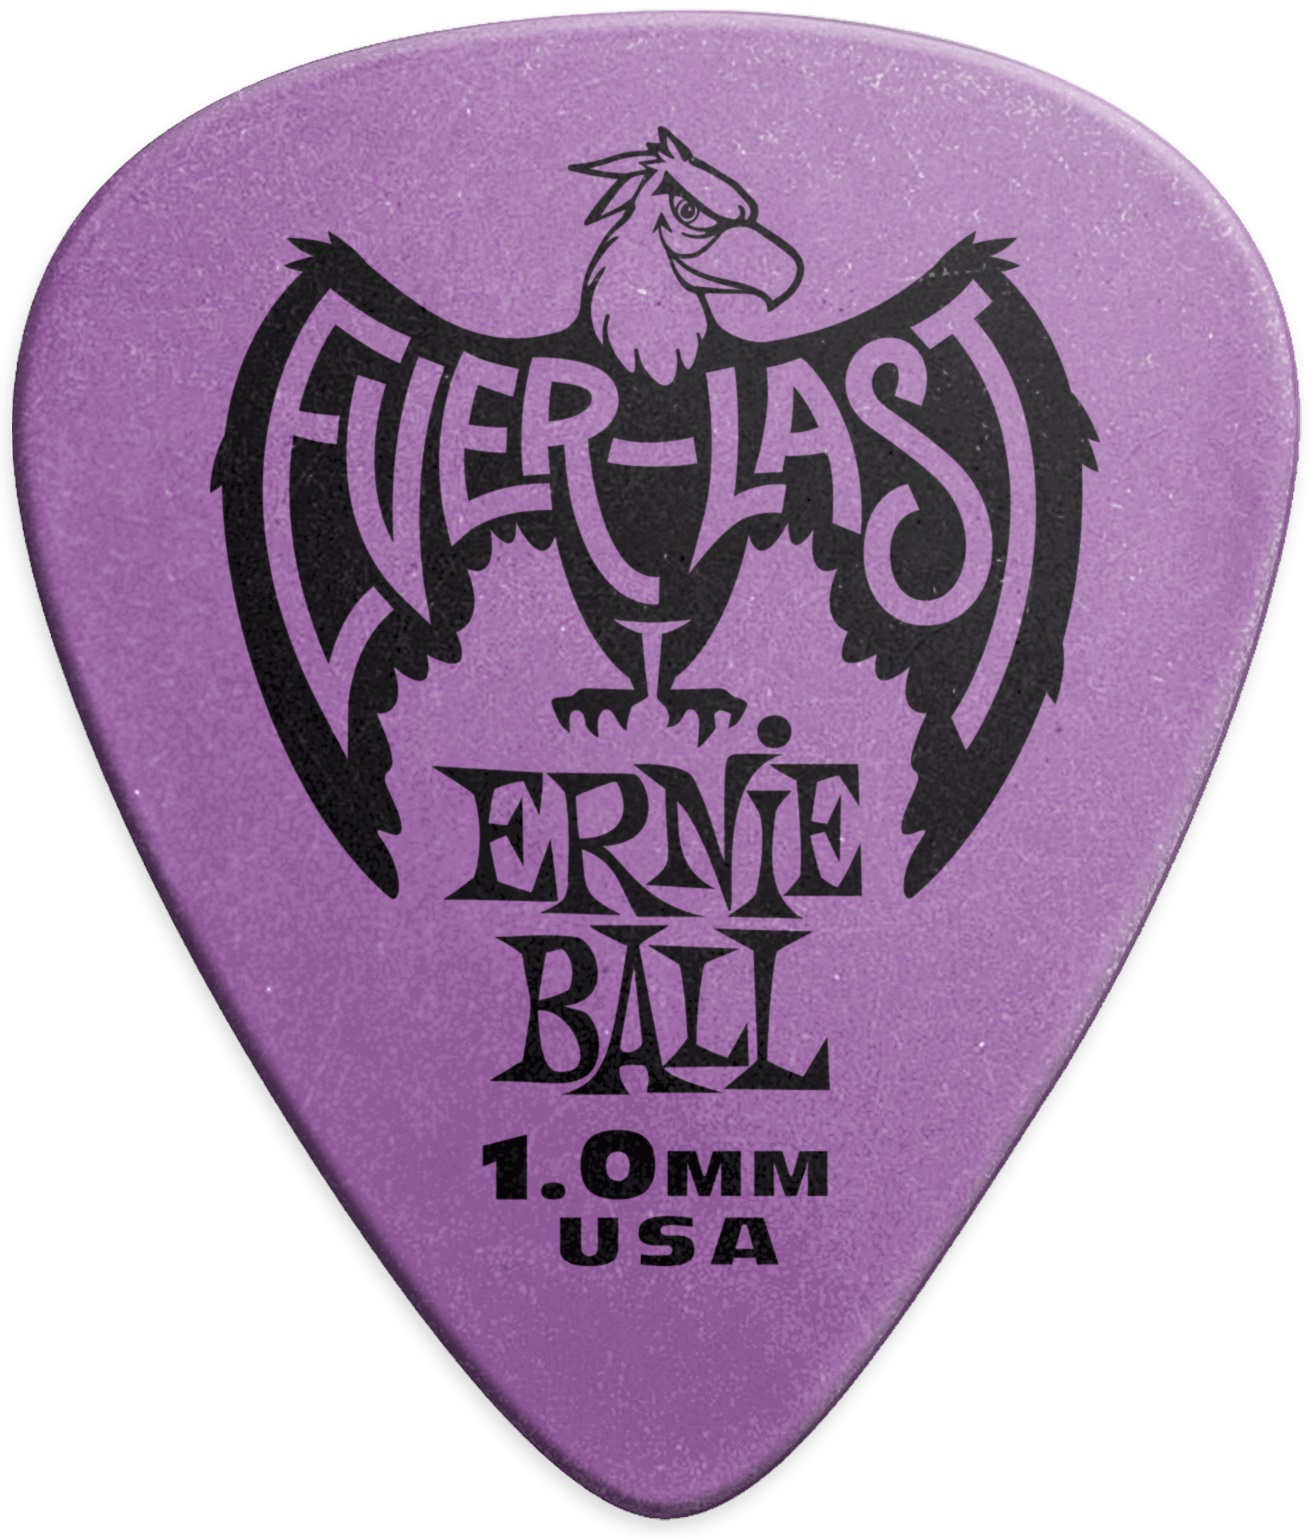 Ernie Ball Everlast Picks 1.0 Purple